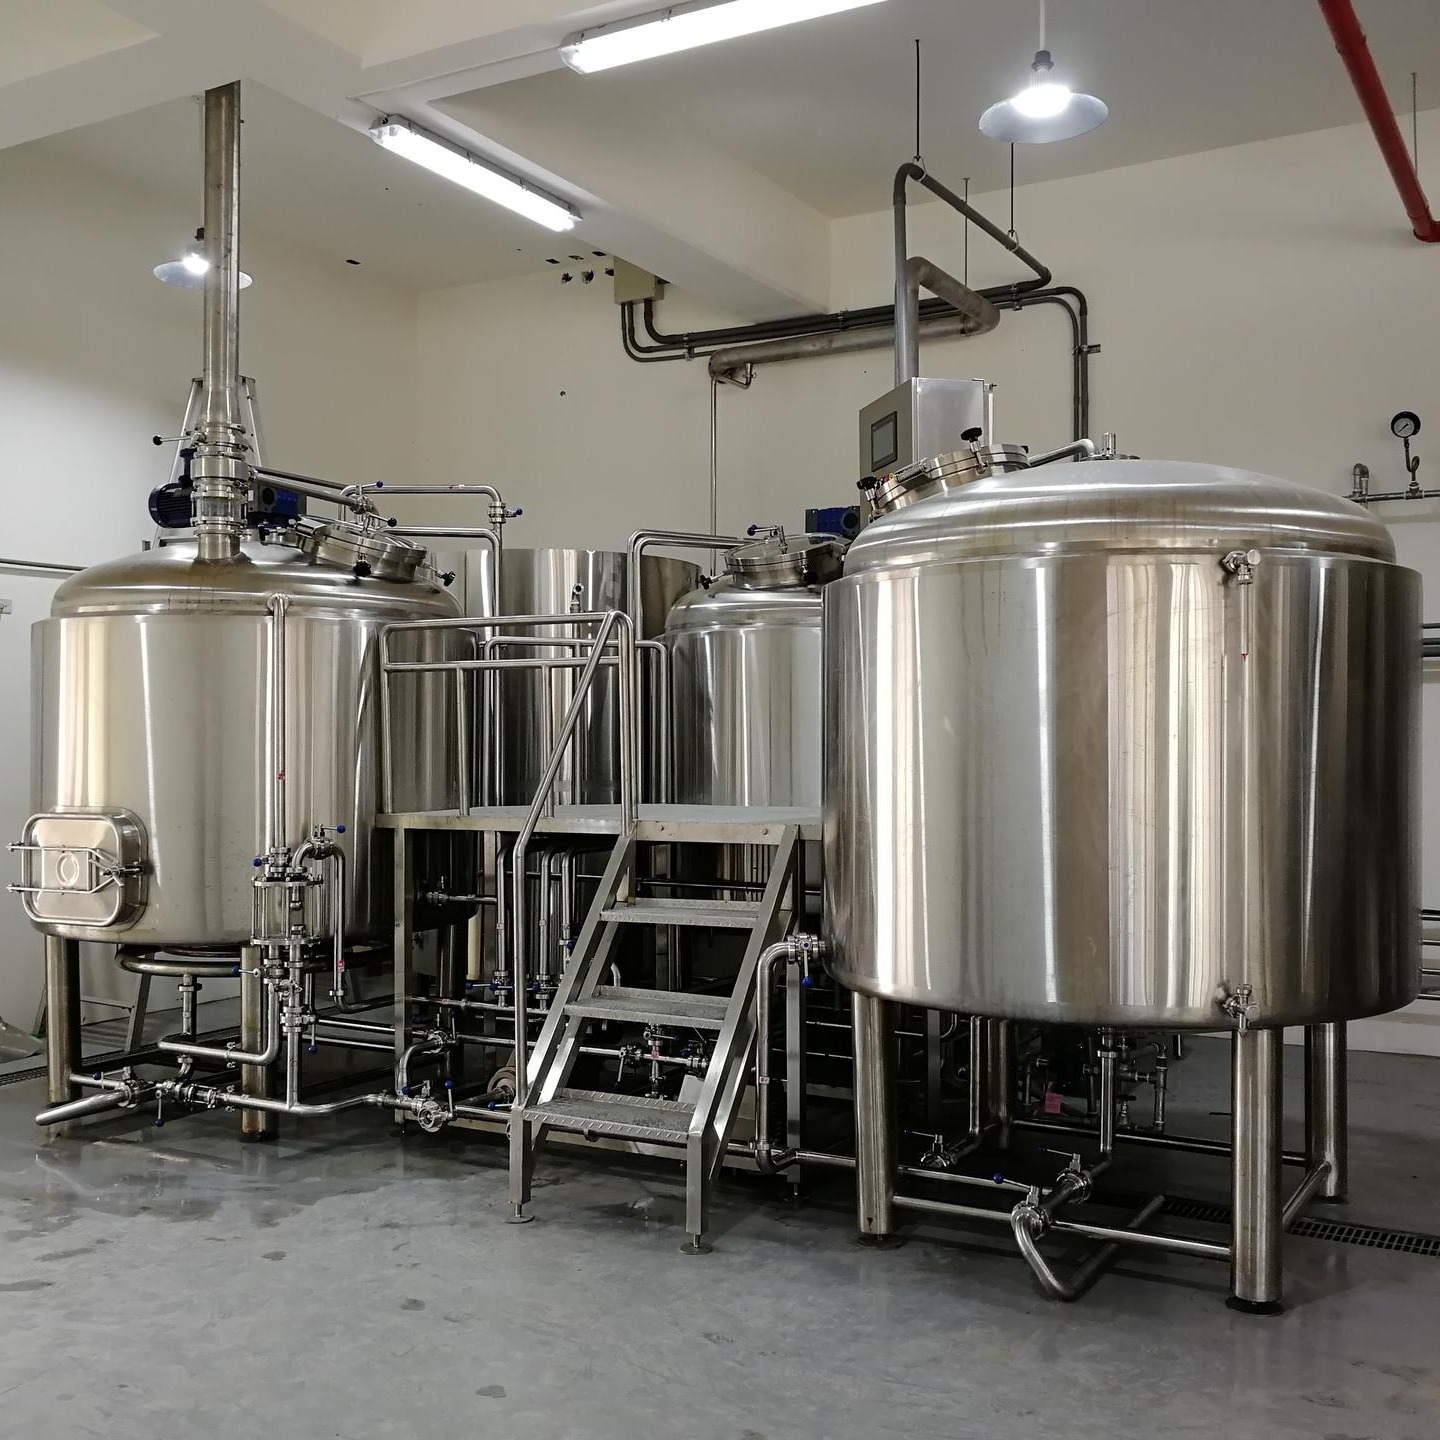 厂家供应啤酒屋用精酿啤酒设备 小型啤酒厂 酿酒设备 自酿扎啤机 啤酒原料 发酵罐